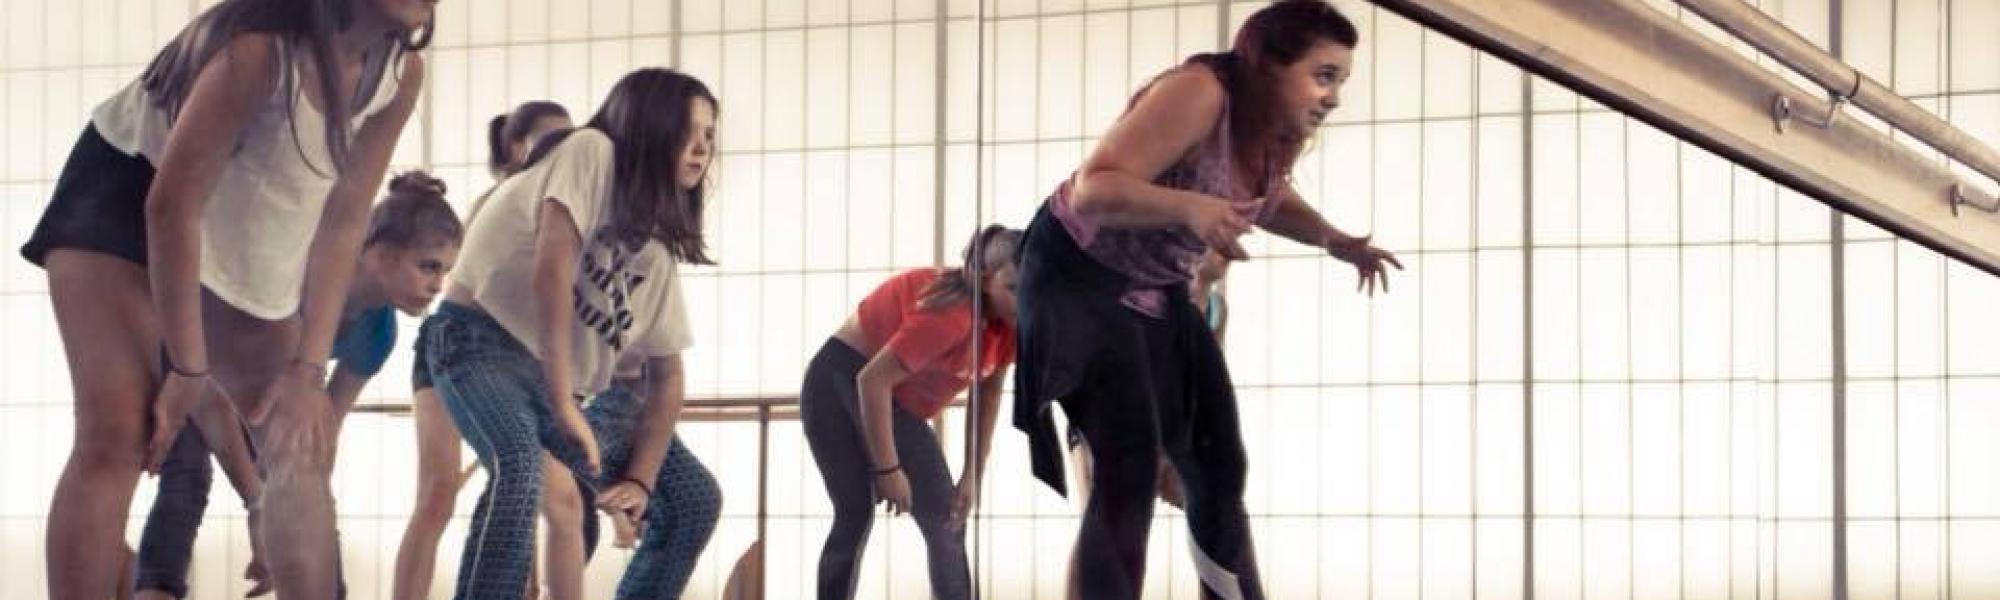 Tanzkurse für Kinder aller Altersstufen bei Alicia Kidman Dance.